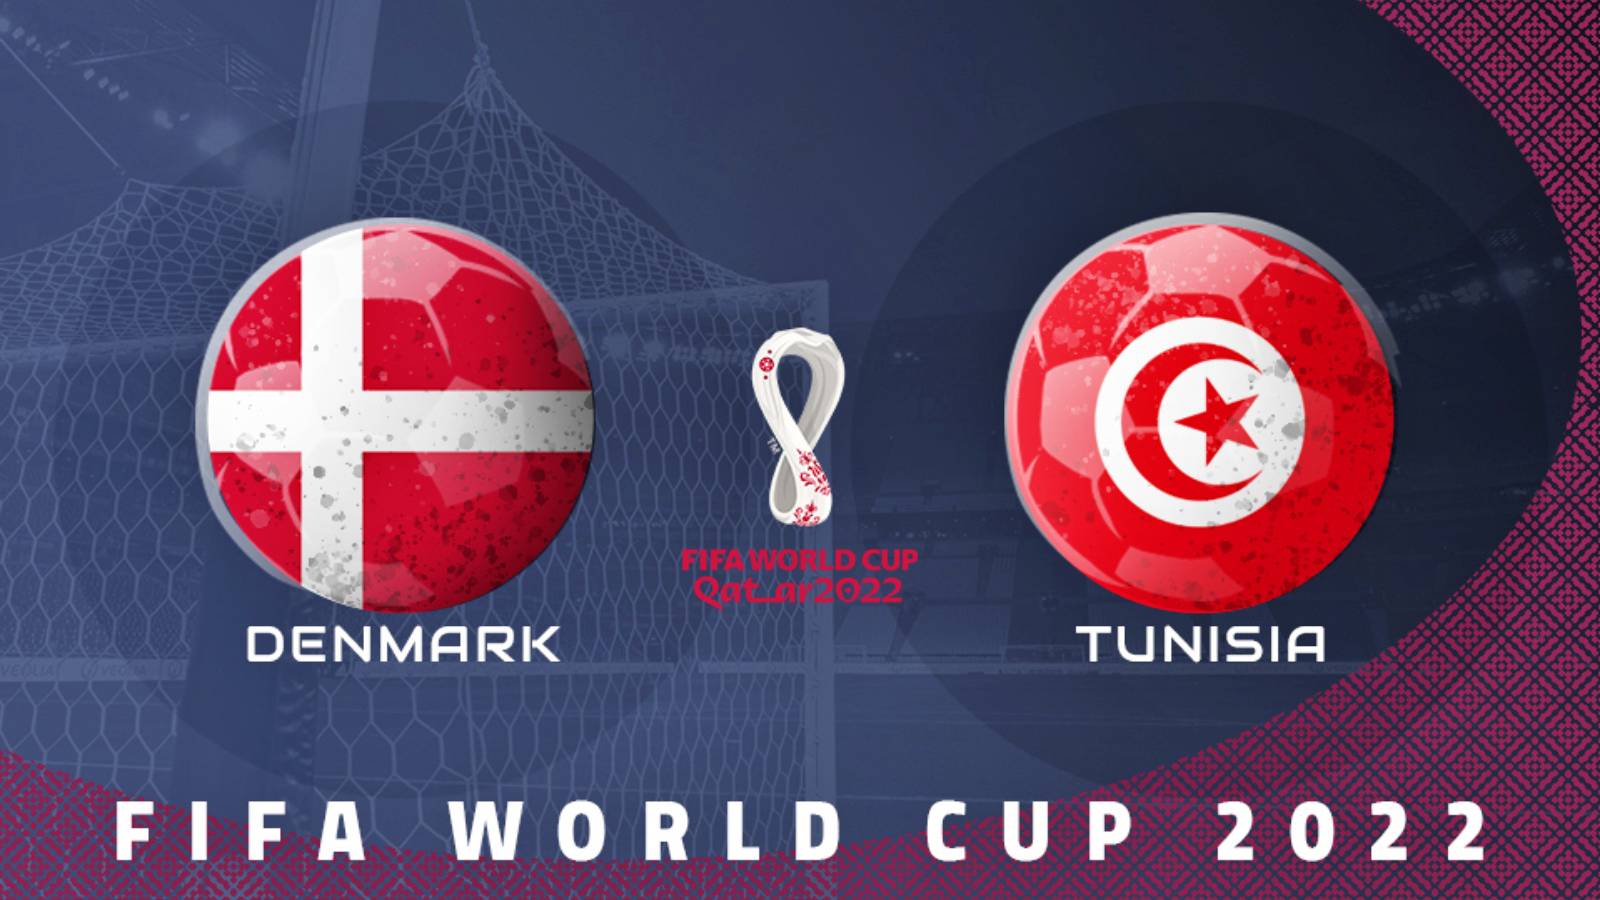 DENEMARKEN – TUNESIË TVR 1 LIVE WEDSTRIJD WORLD CUP 2022 QATAR